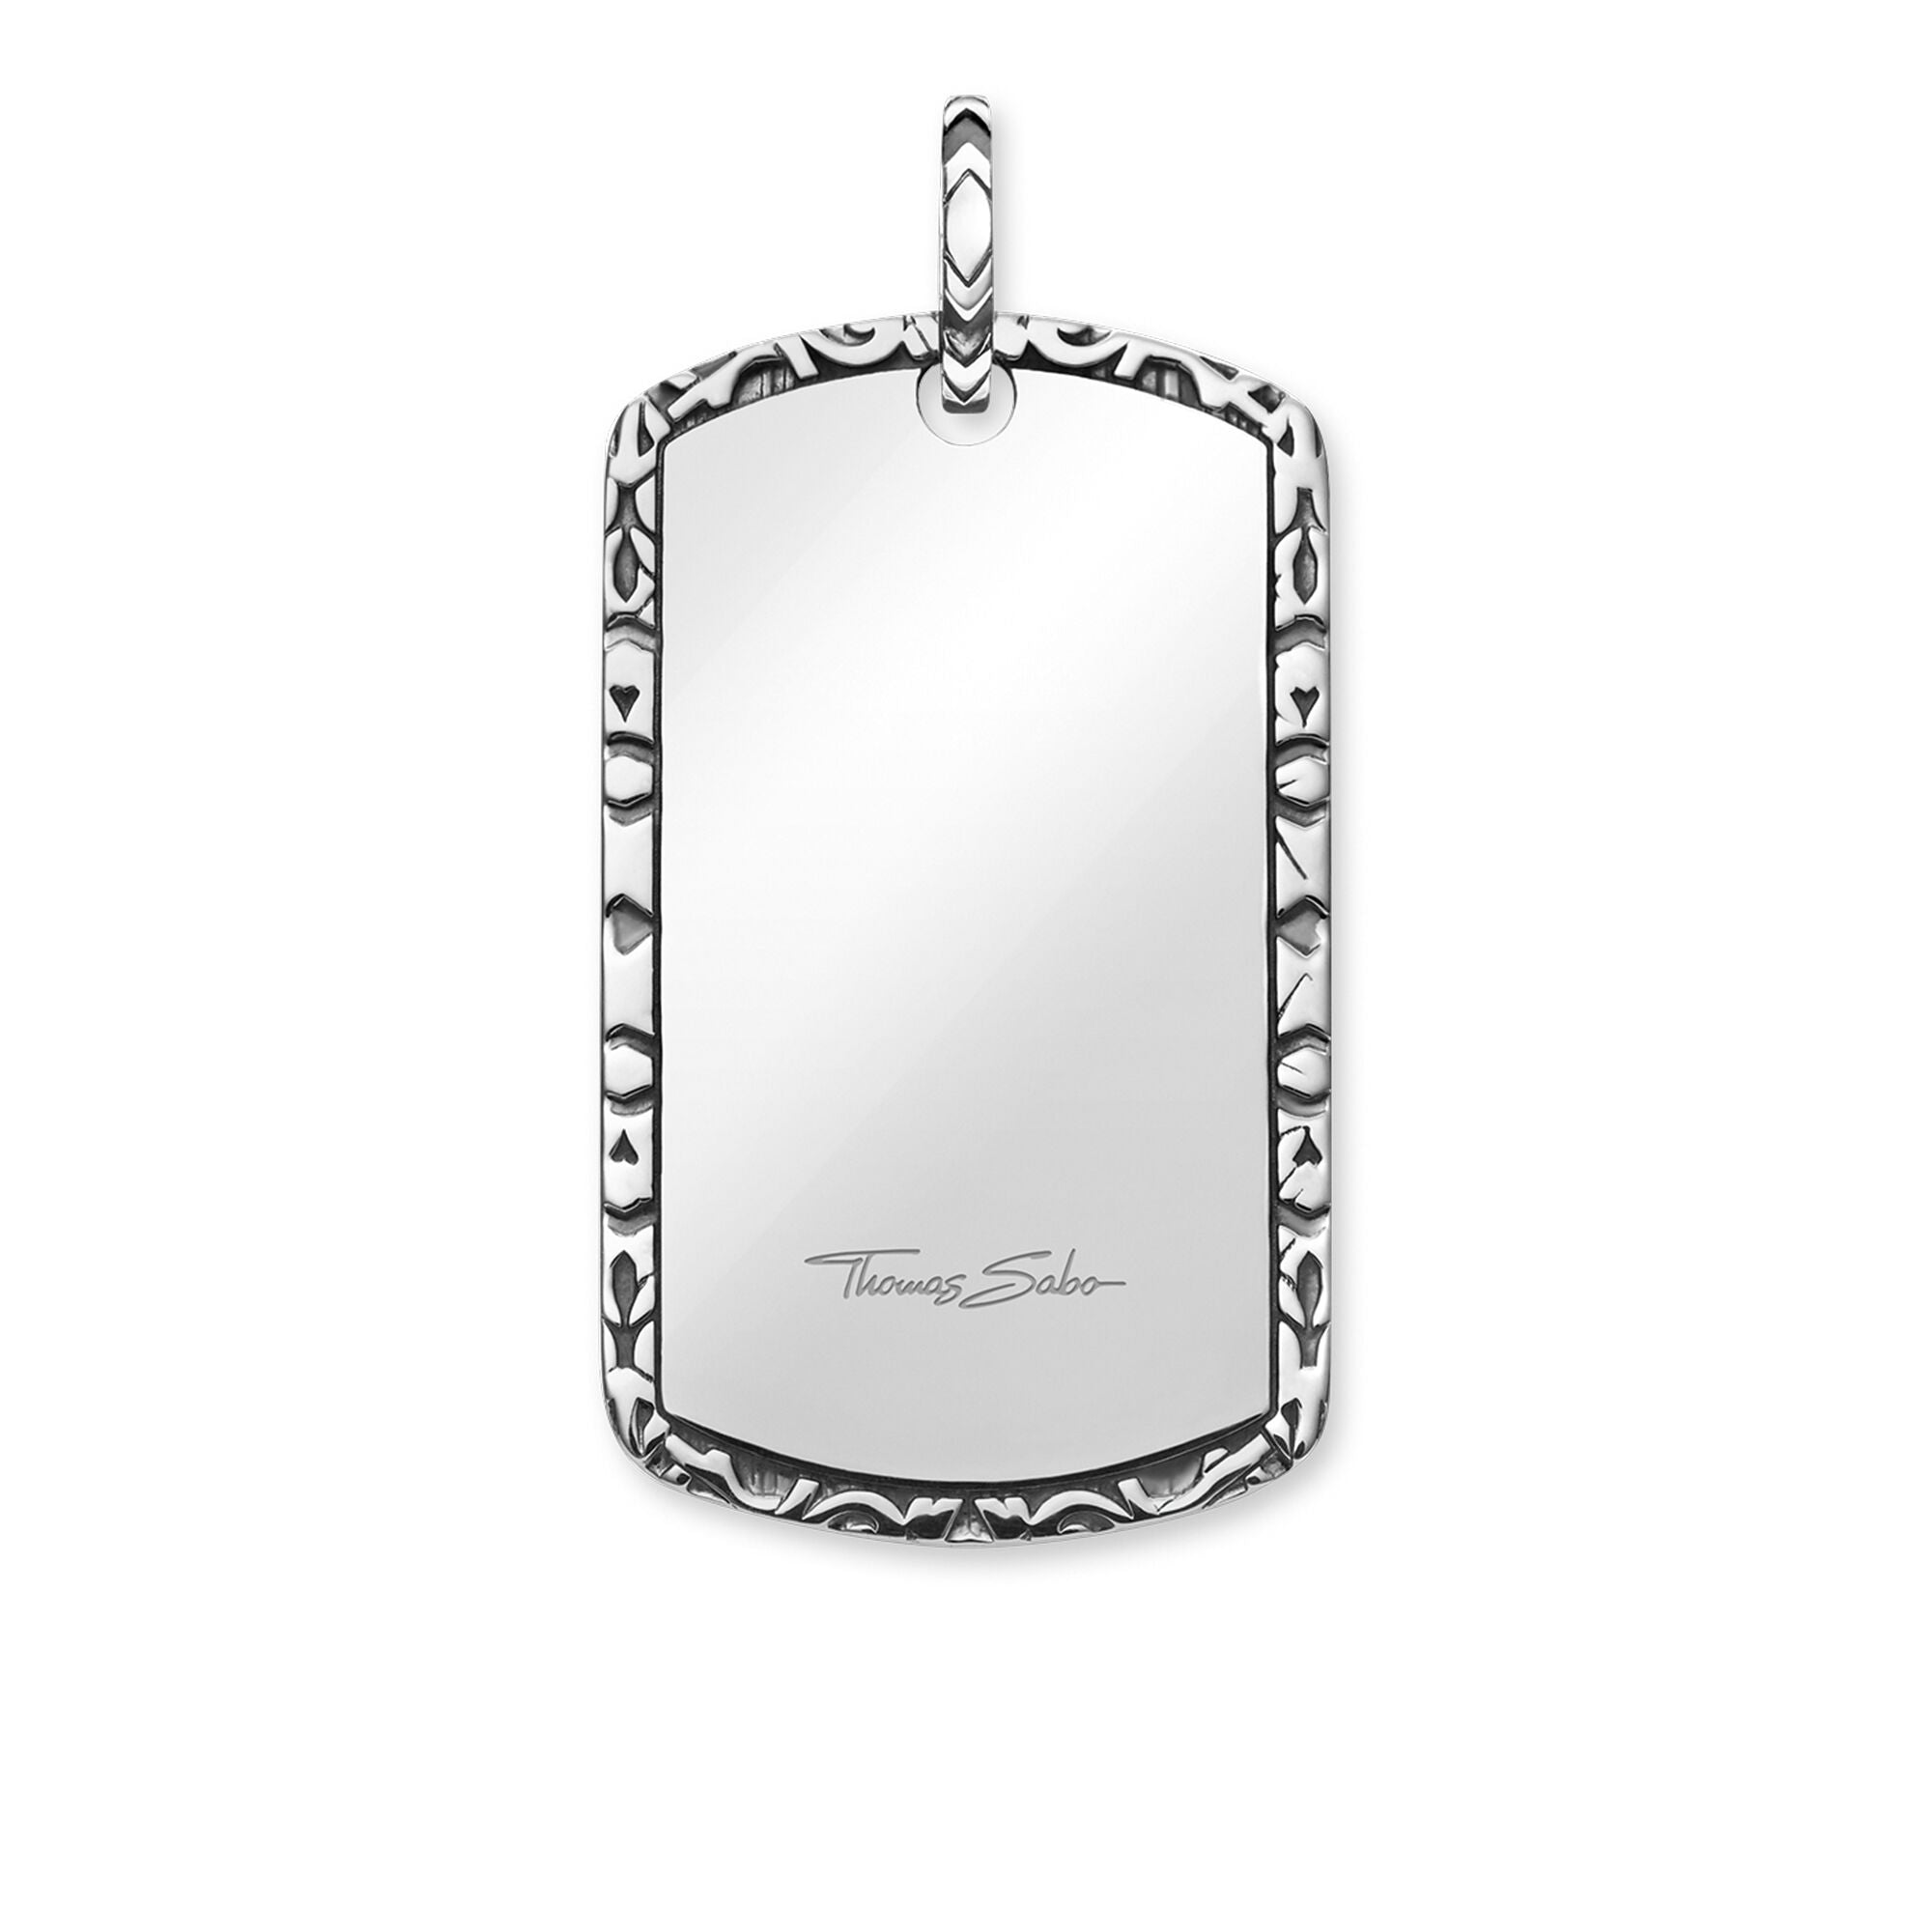 Sterling silver, designer thomas sabo, framed dog tag, pendant